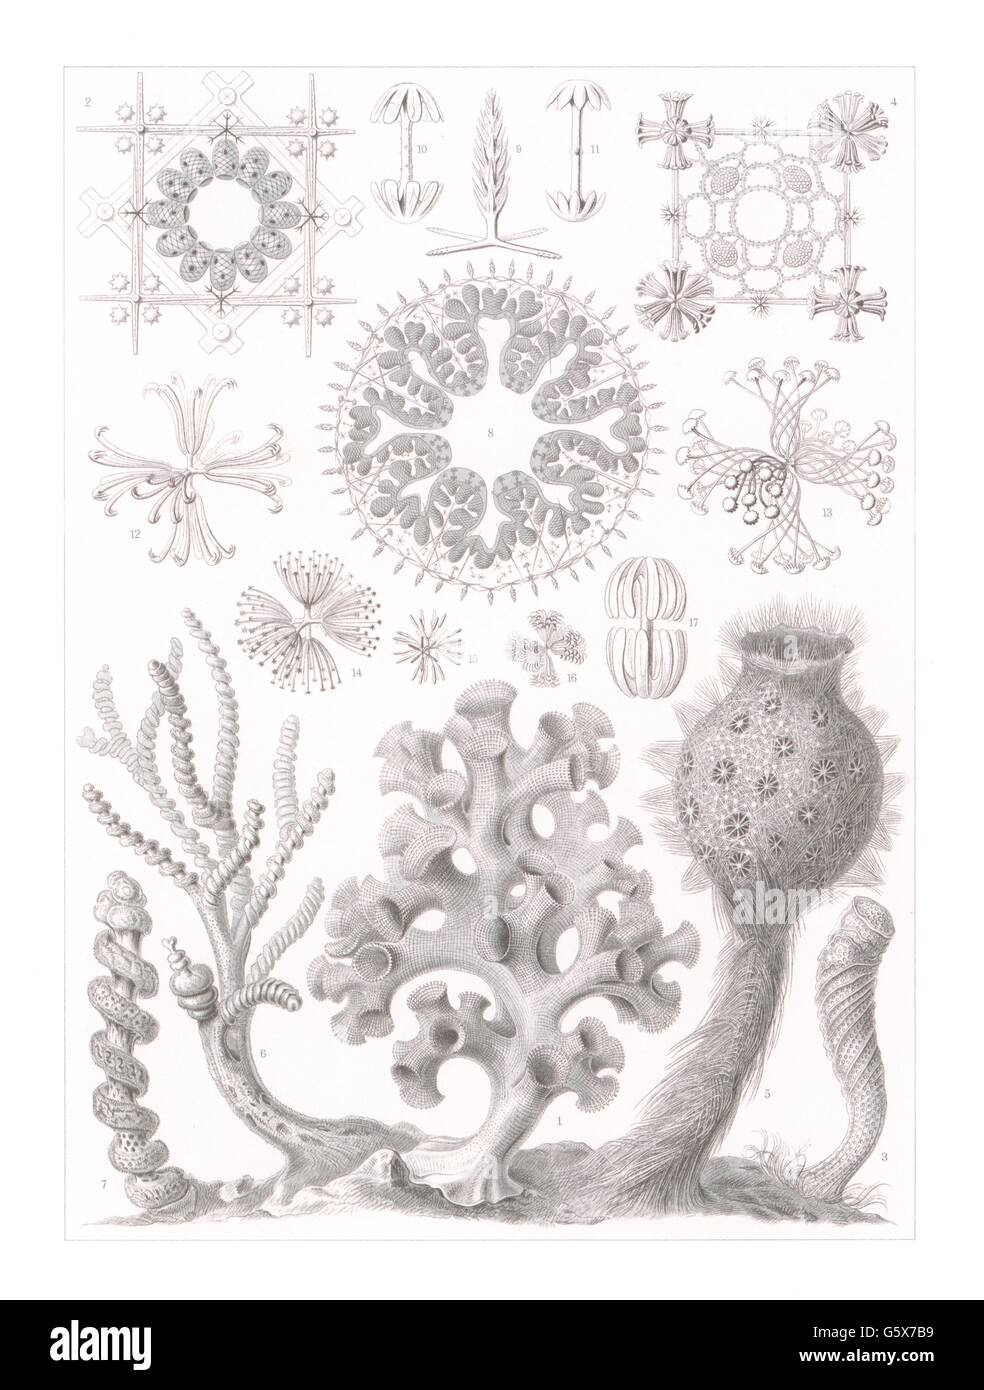 zoologie / Tiere, Glassschwämme (Hexactinellae), Farblithographie, aus: Ernst Haeckel, 'Kunstformen der Natur', Leipzig - Wien, 1899 - 1904, Additional-Rights-Clearences-not available Stockfoto